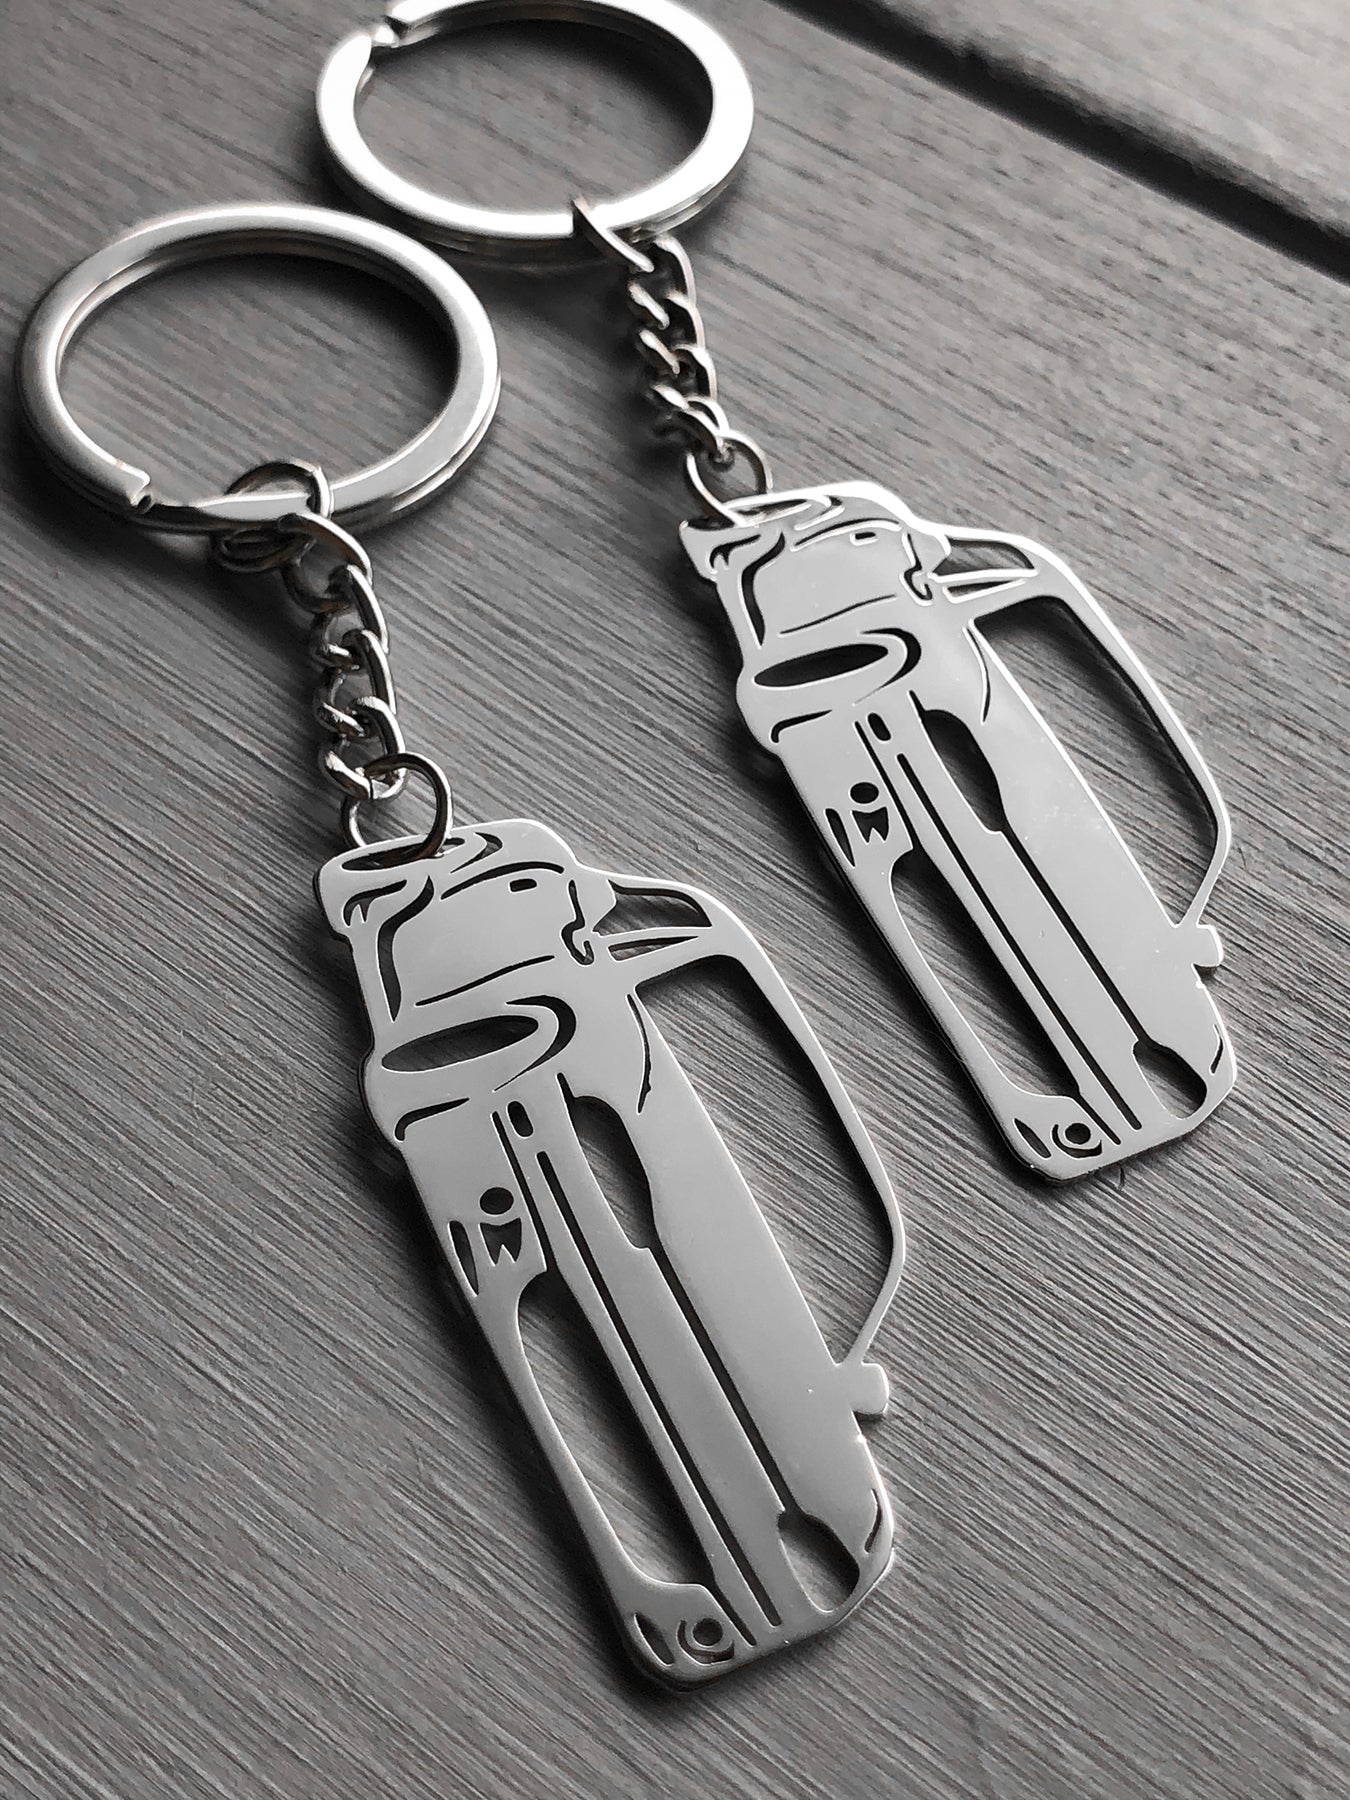 miata nb key chain keychain